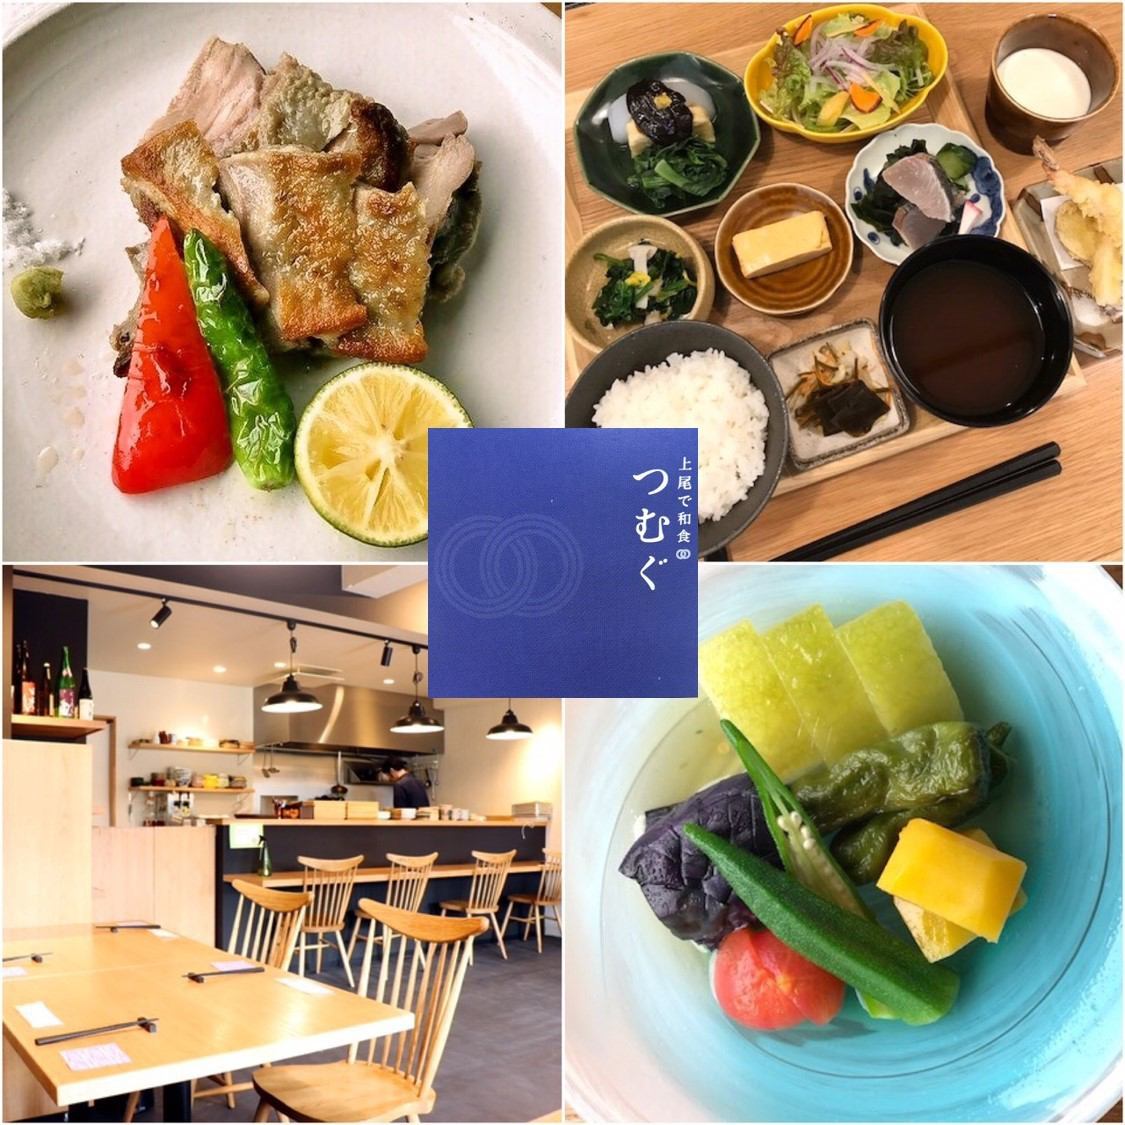 您可以使用新鮮的蔬菜和鴨肉來品嚐正宗的日本料理，這些蔬菜和鴨肉特別適合當地生產，供當地消費！